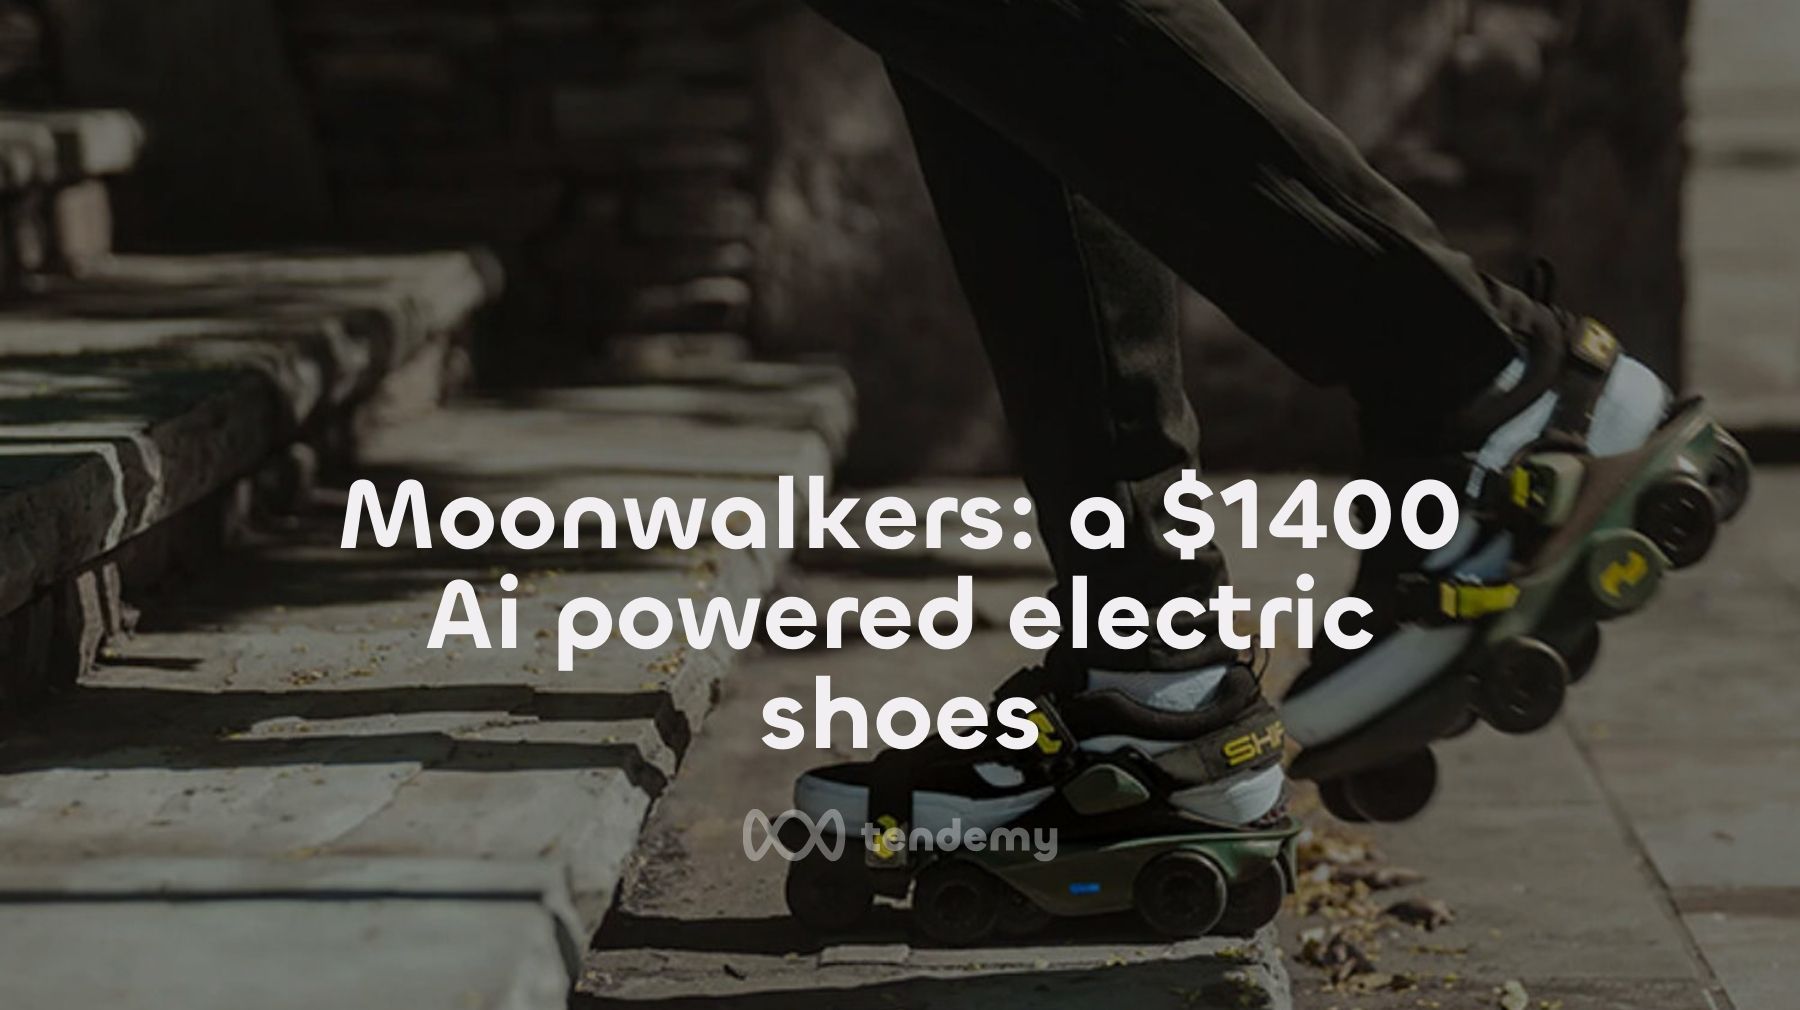 第一雙由 AI 驅動的行走輔助裝置 - Moonwalkers